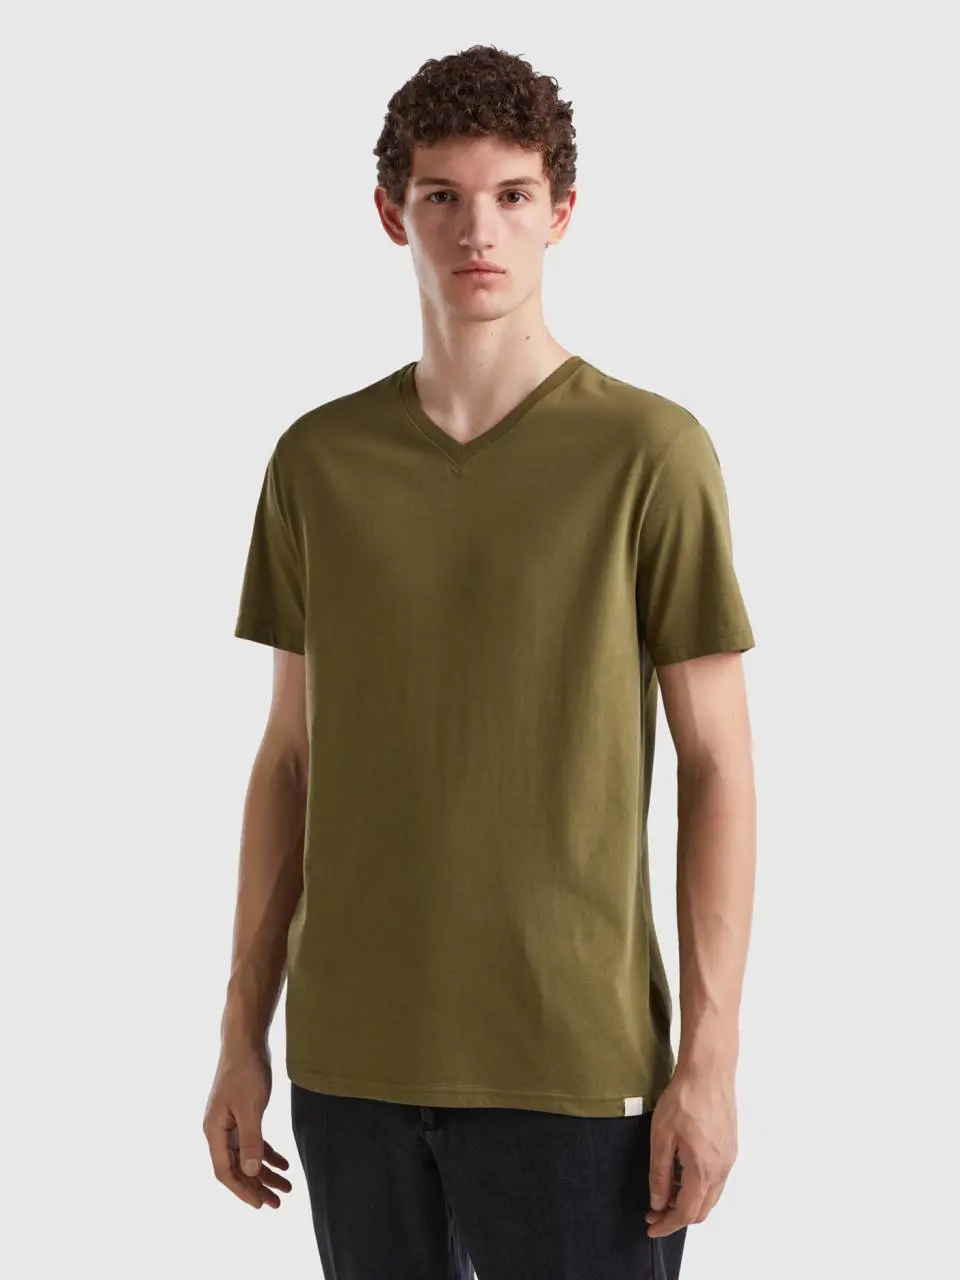 Benetton t-shirt in long fiber cotton. 1